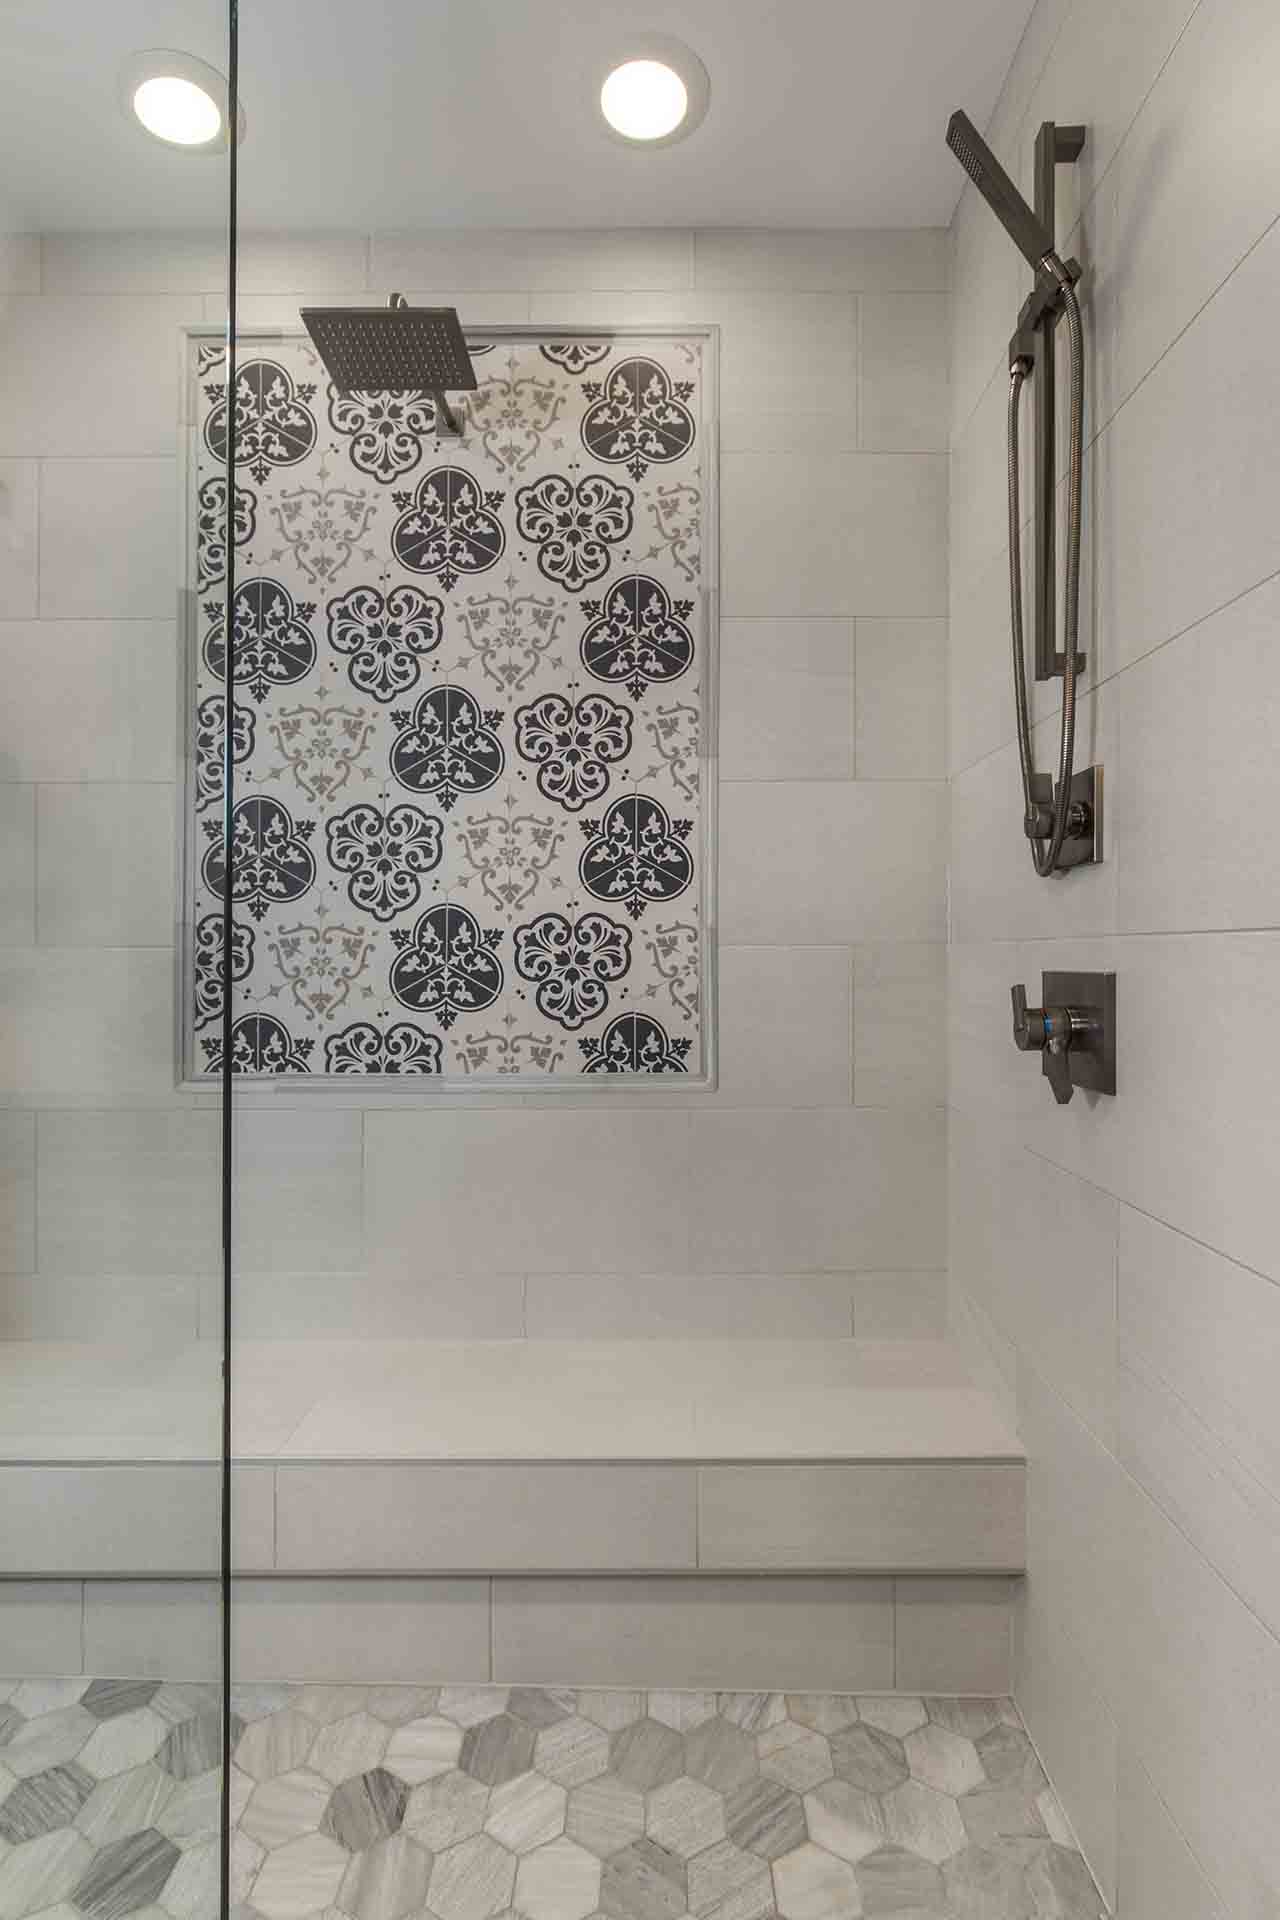 tile work in main shower